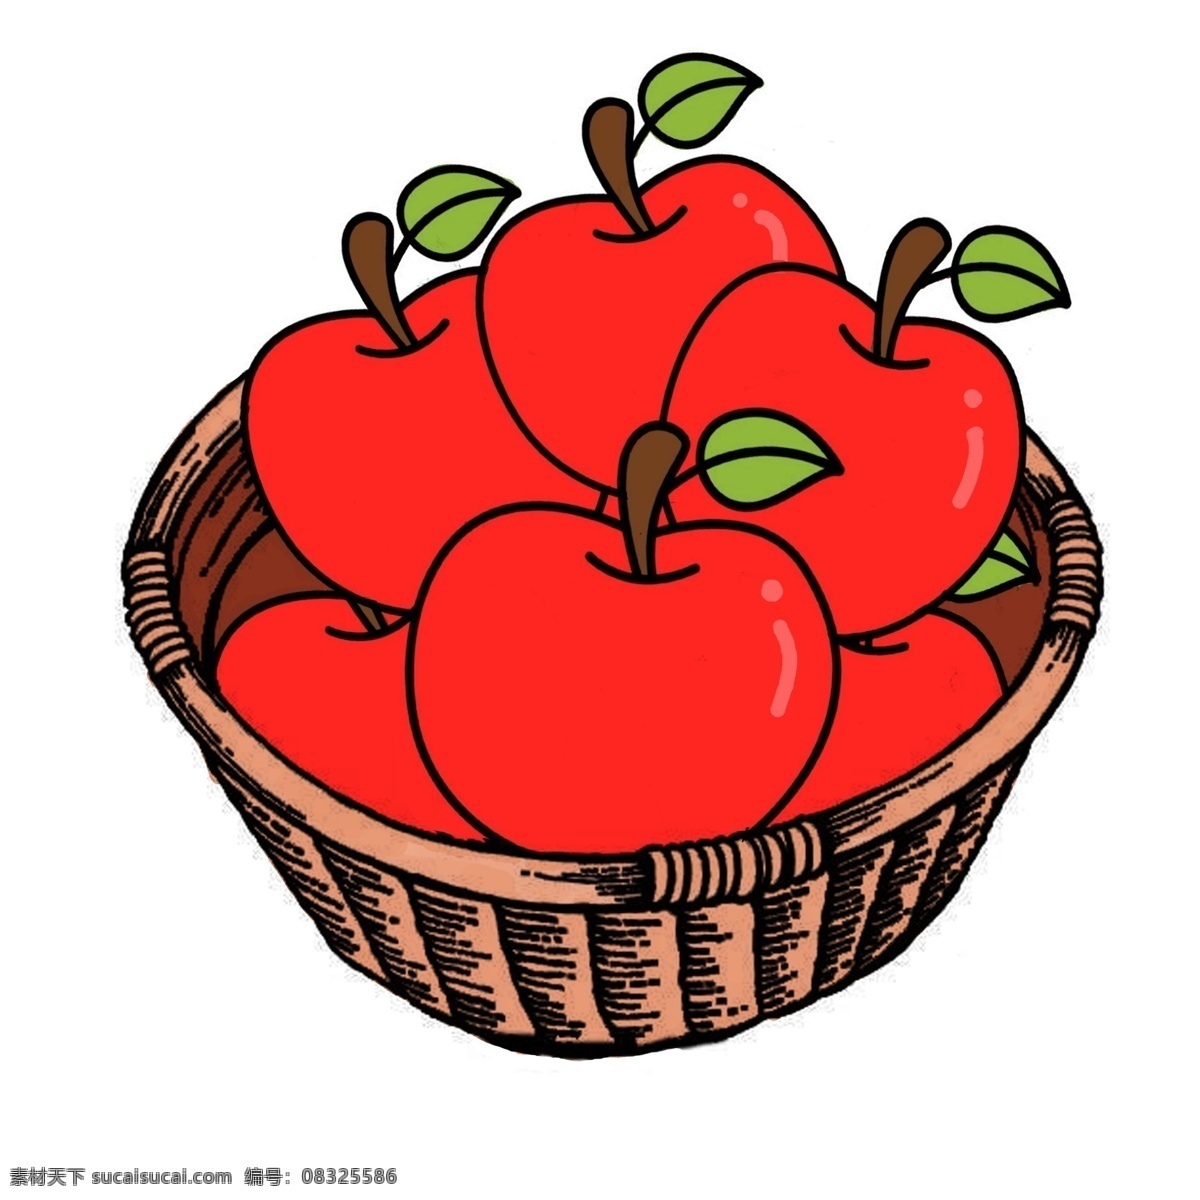 手绘苹果 卡通苹果图片 卡通苹果 苹果 苹果手绘 苹果画 原画水果 红苹果设计 水彩画 蔬菜 手绘水彩苹果 苹果素材 苹果底纹 苹果装饰素材 水彩苹果装饰 苹果插画 卡通设计